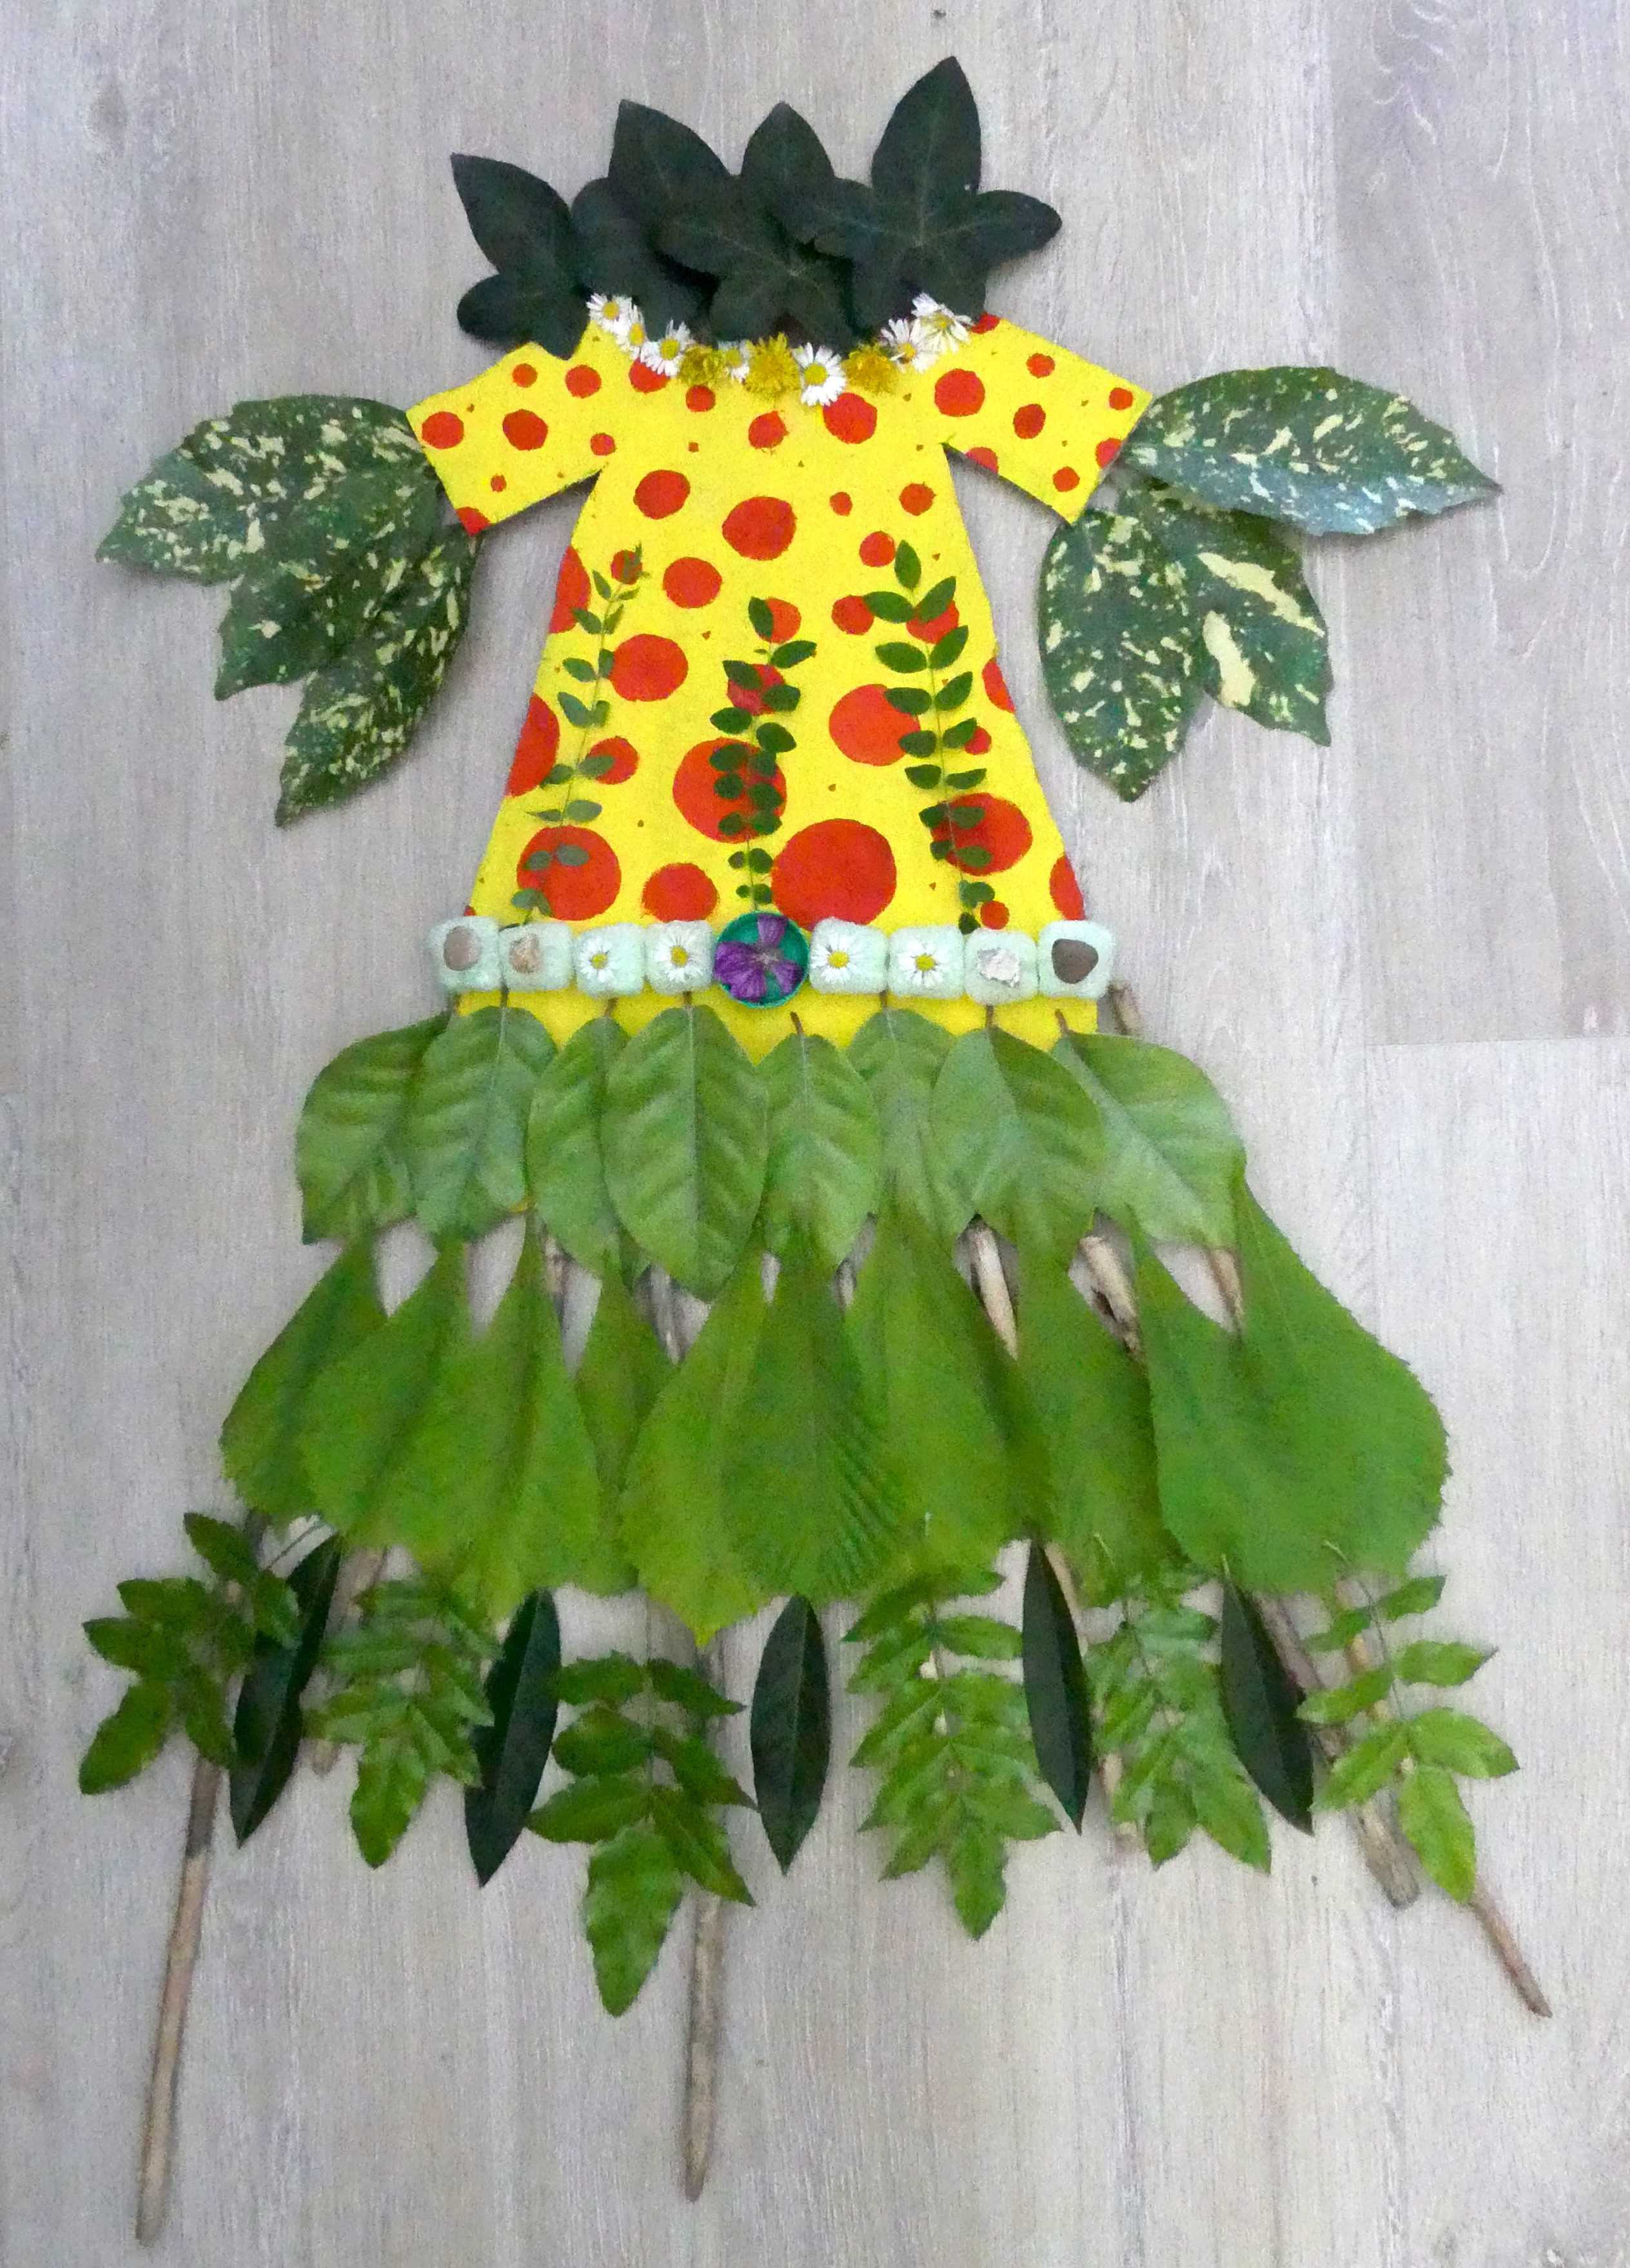 Réalisation d'après l'œuvre de Nathalie Favre, [Robe rouge]. Il s'agit d'une robe réalisée à plat avec des végétaux.